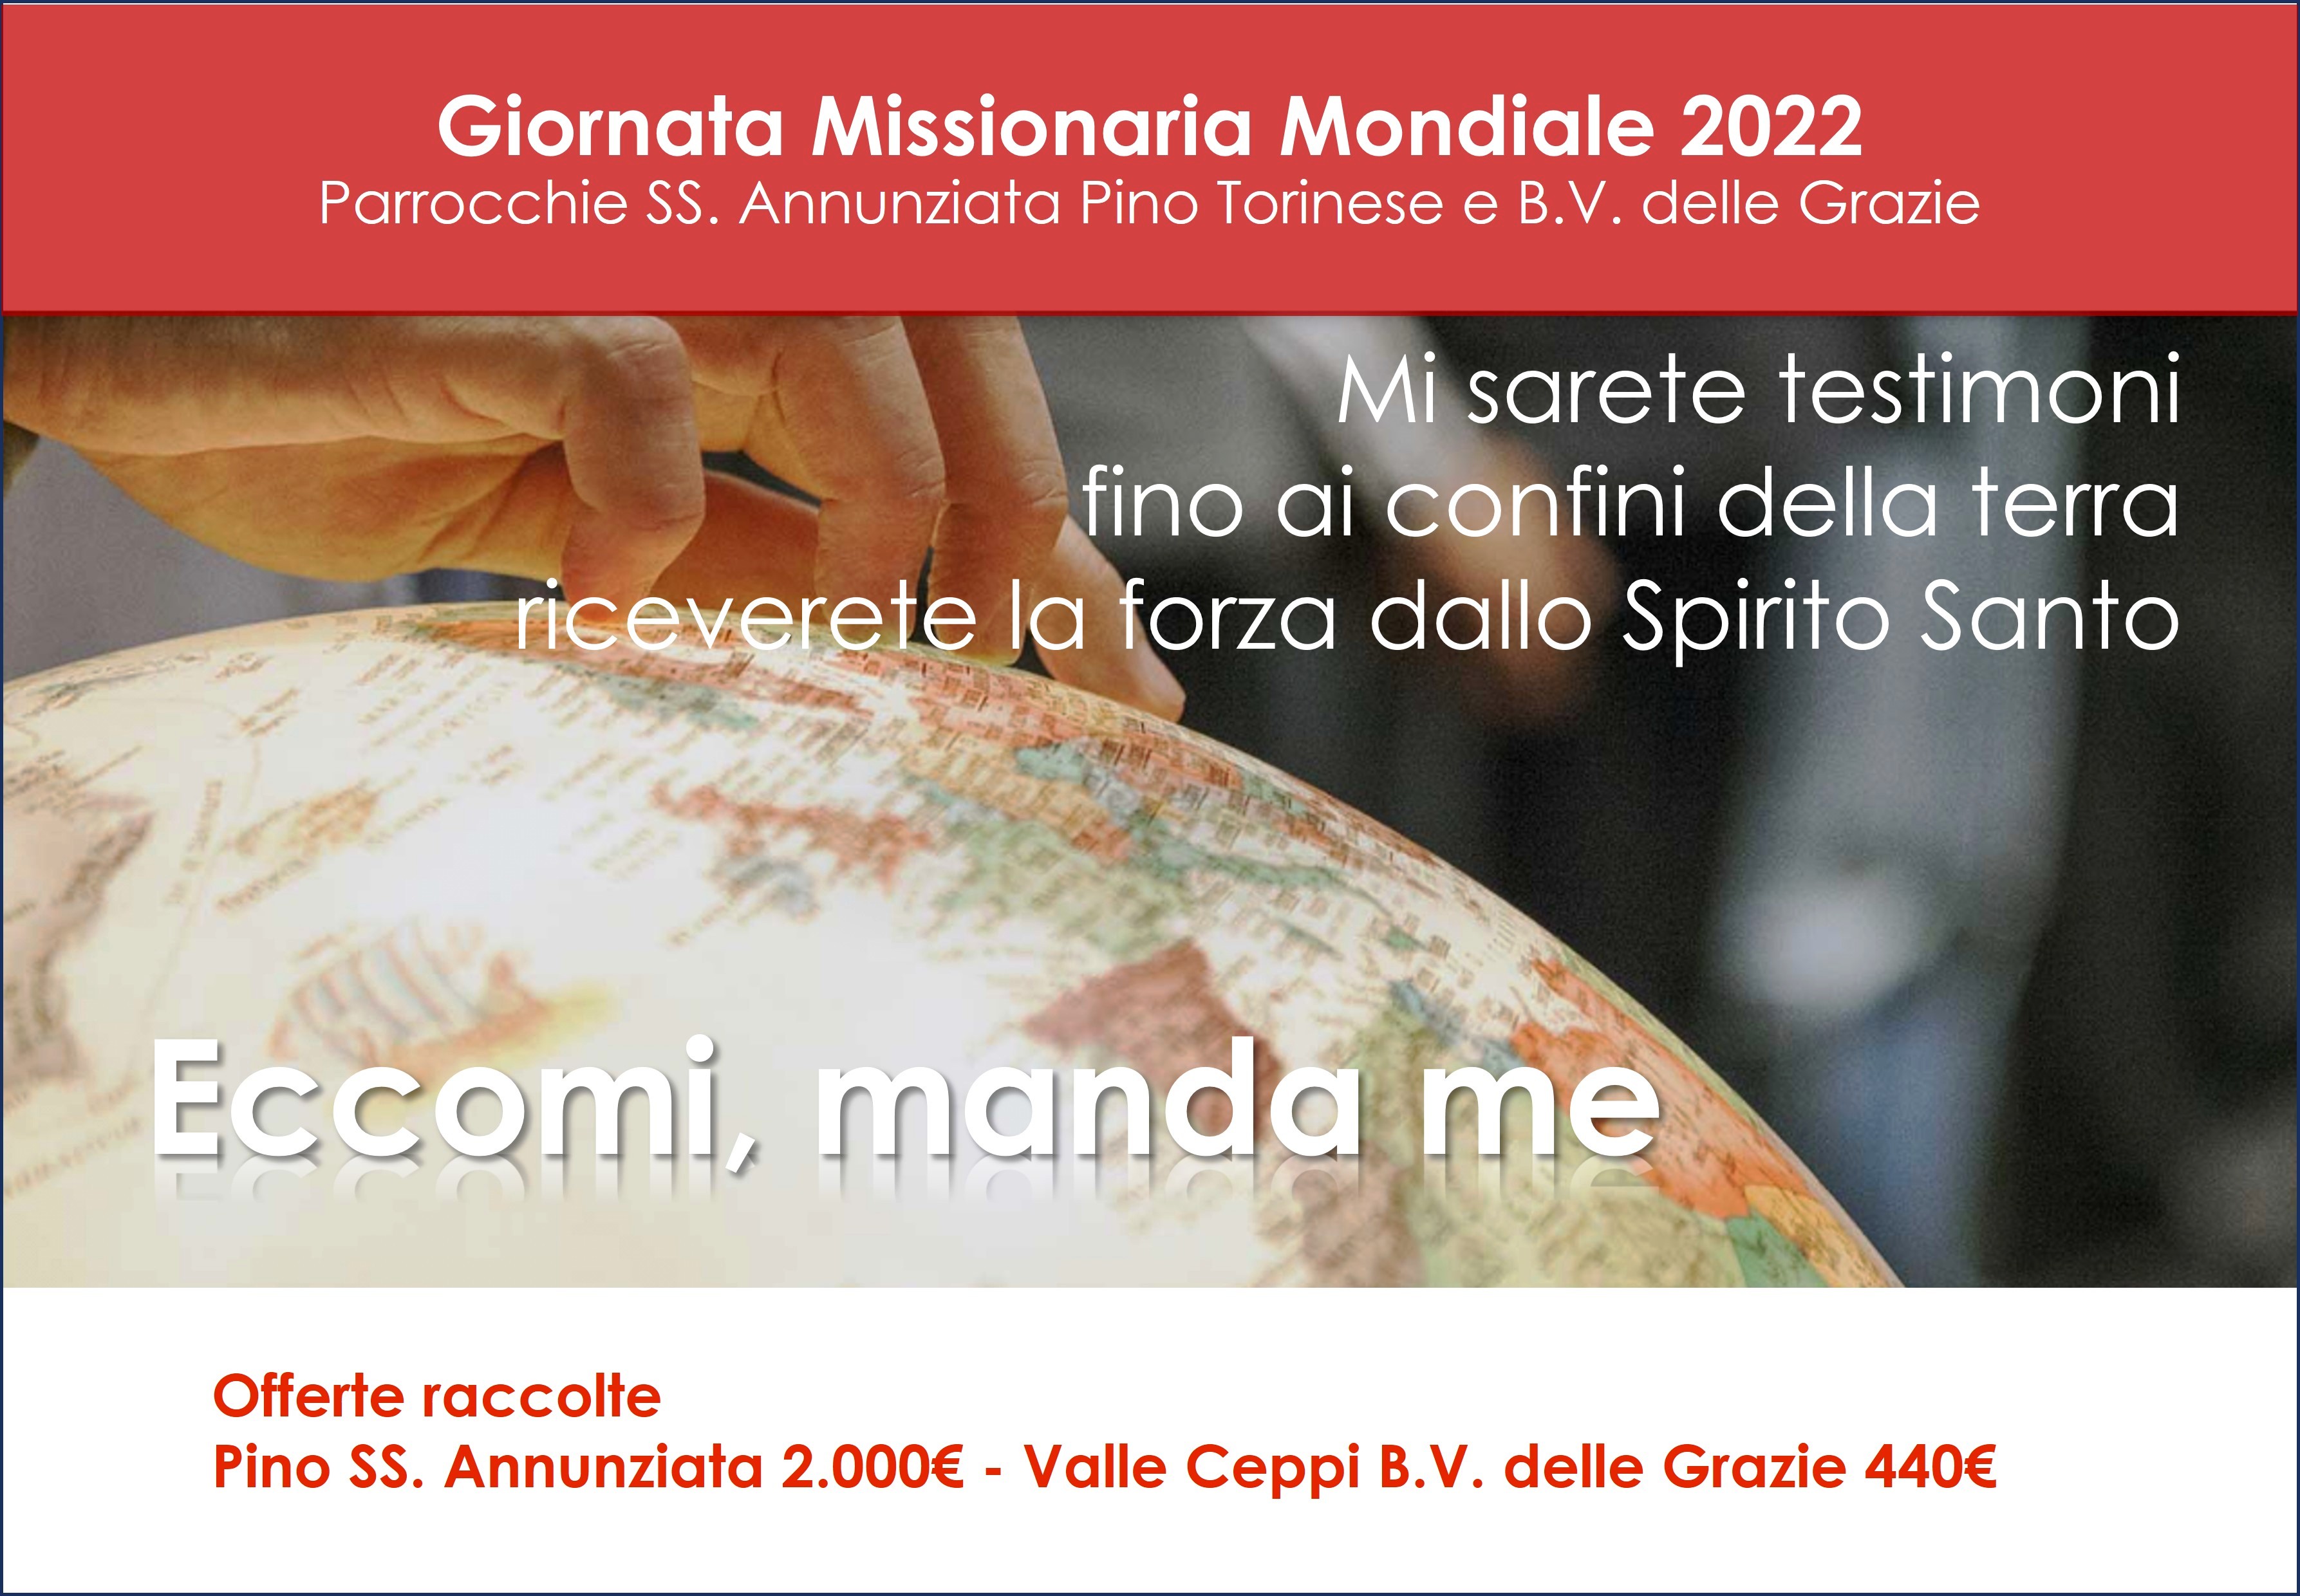 20221031 Pino SS Annunziata Giornata Missionaria Mondiale v2